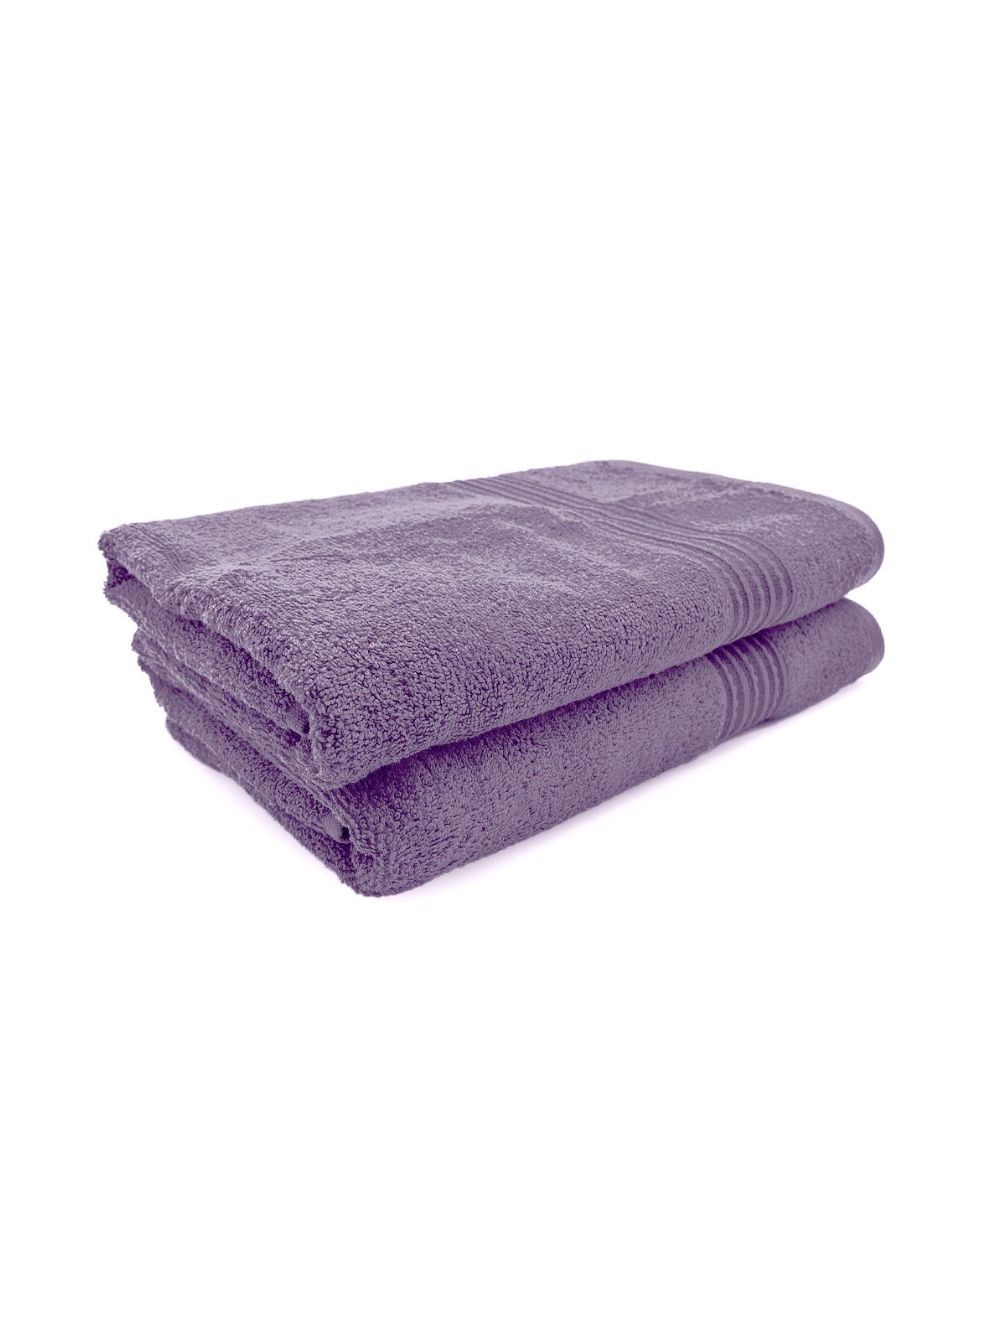 Rishahome 100% Cotton 2-Piece Bath Towel Set, Premium Collection, Violet-14RHFT060